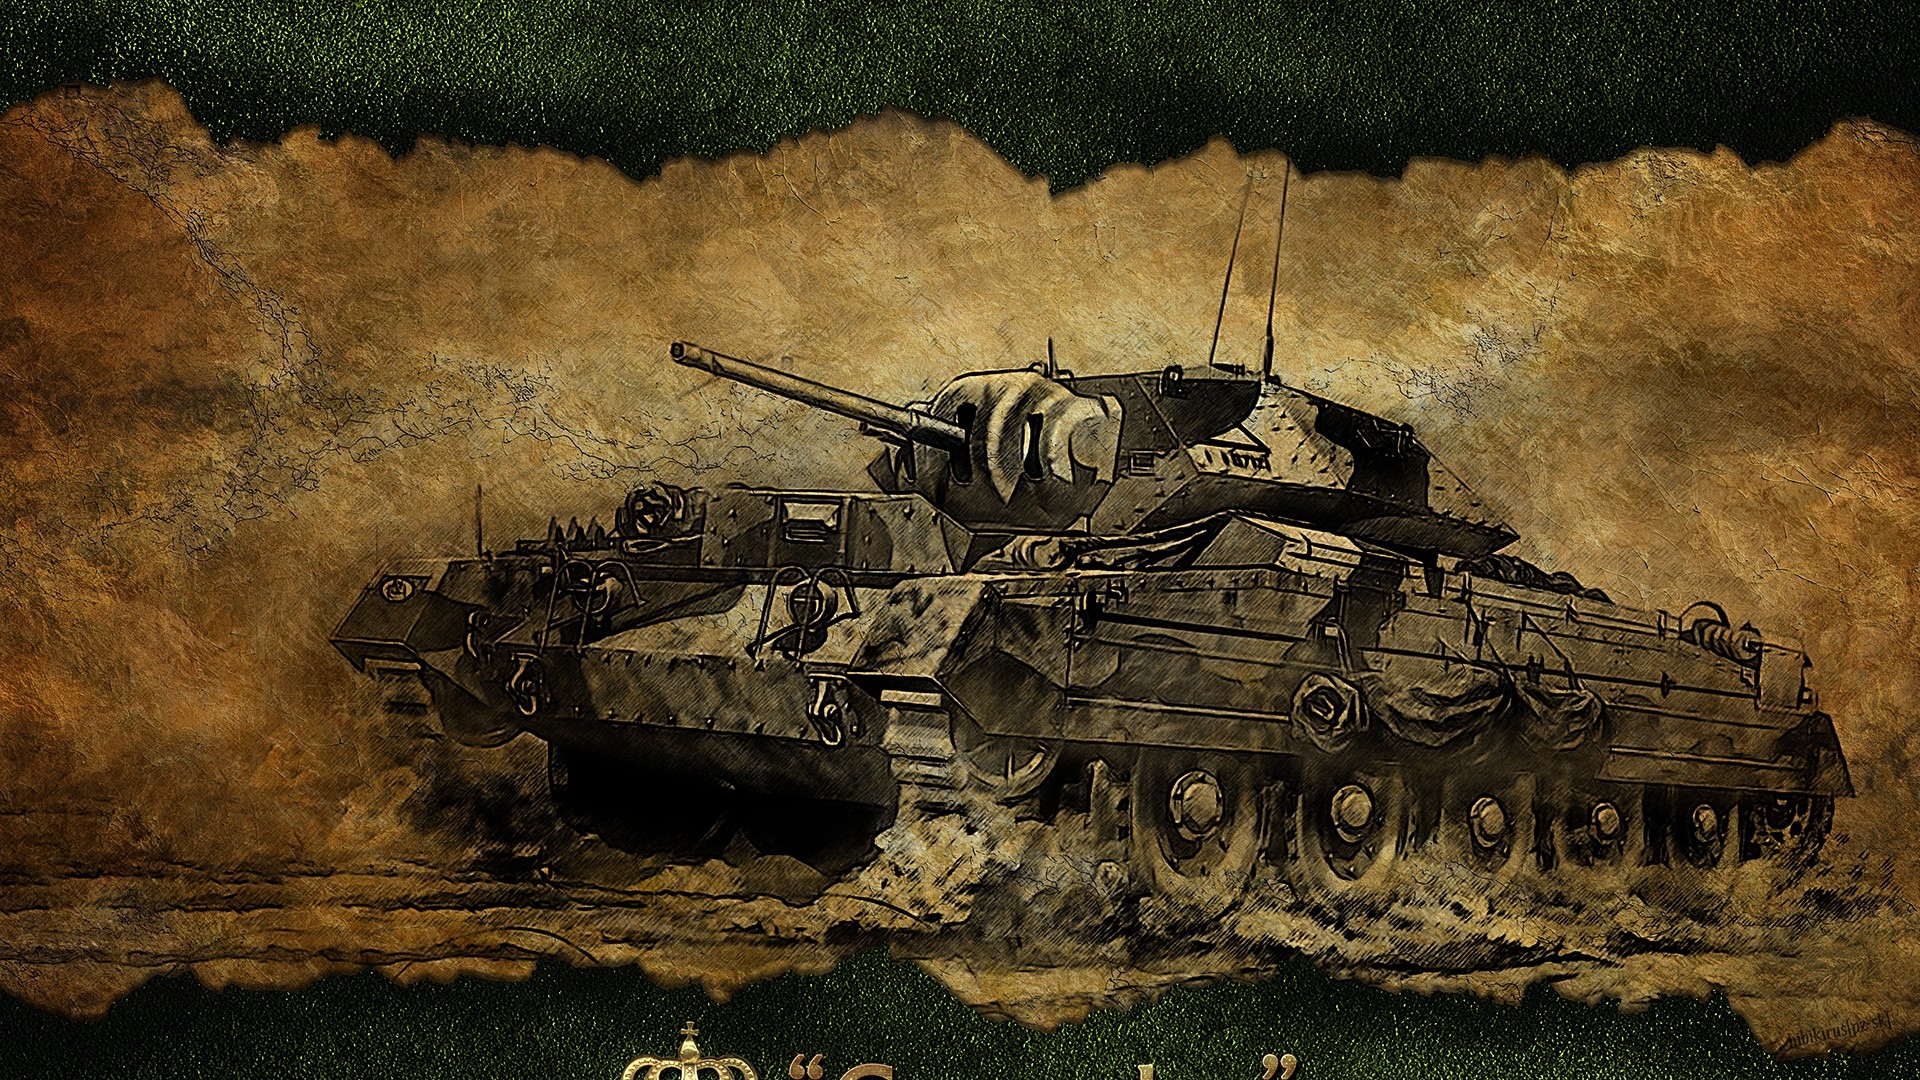 Download Wallpaper 1920x1080 World of tanks Crusader Tank Game